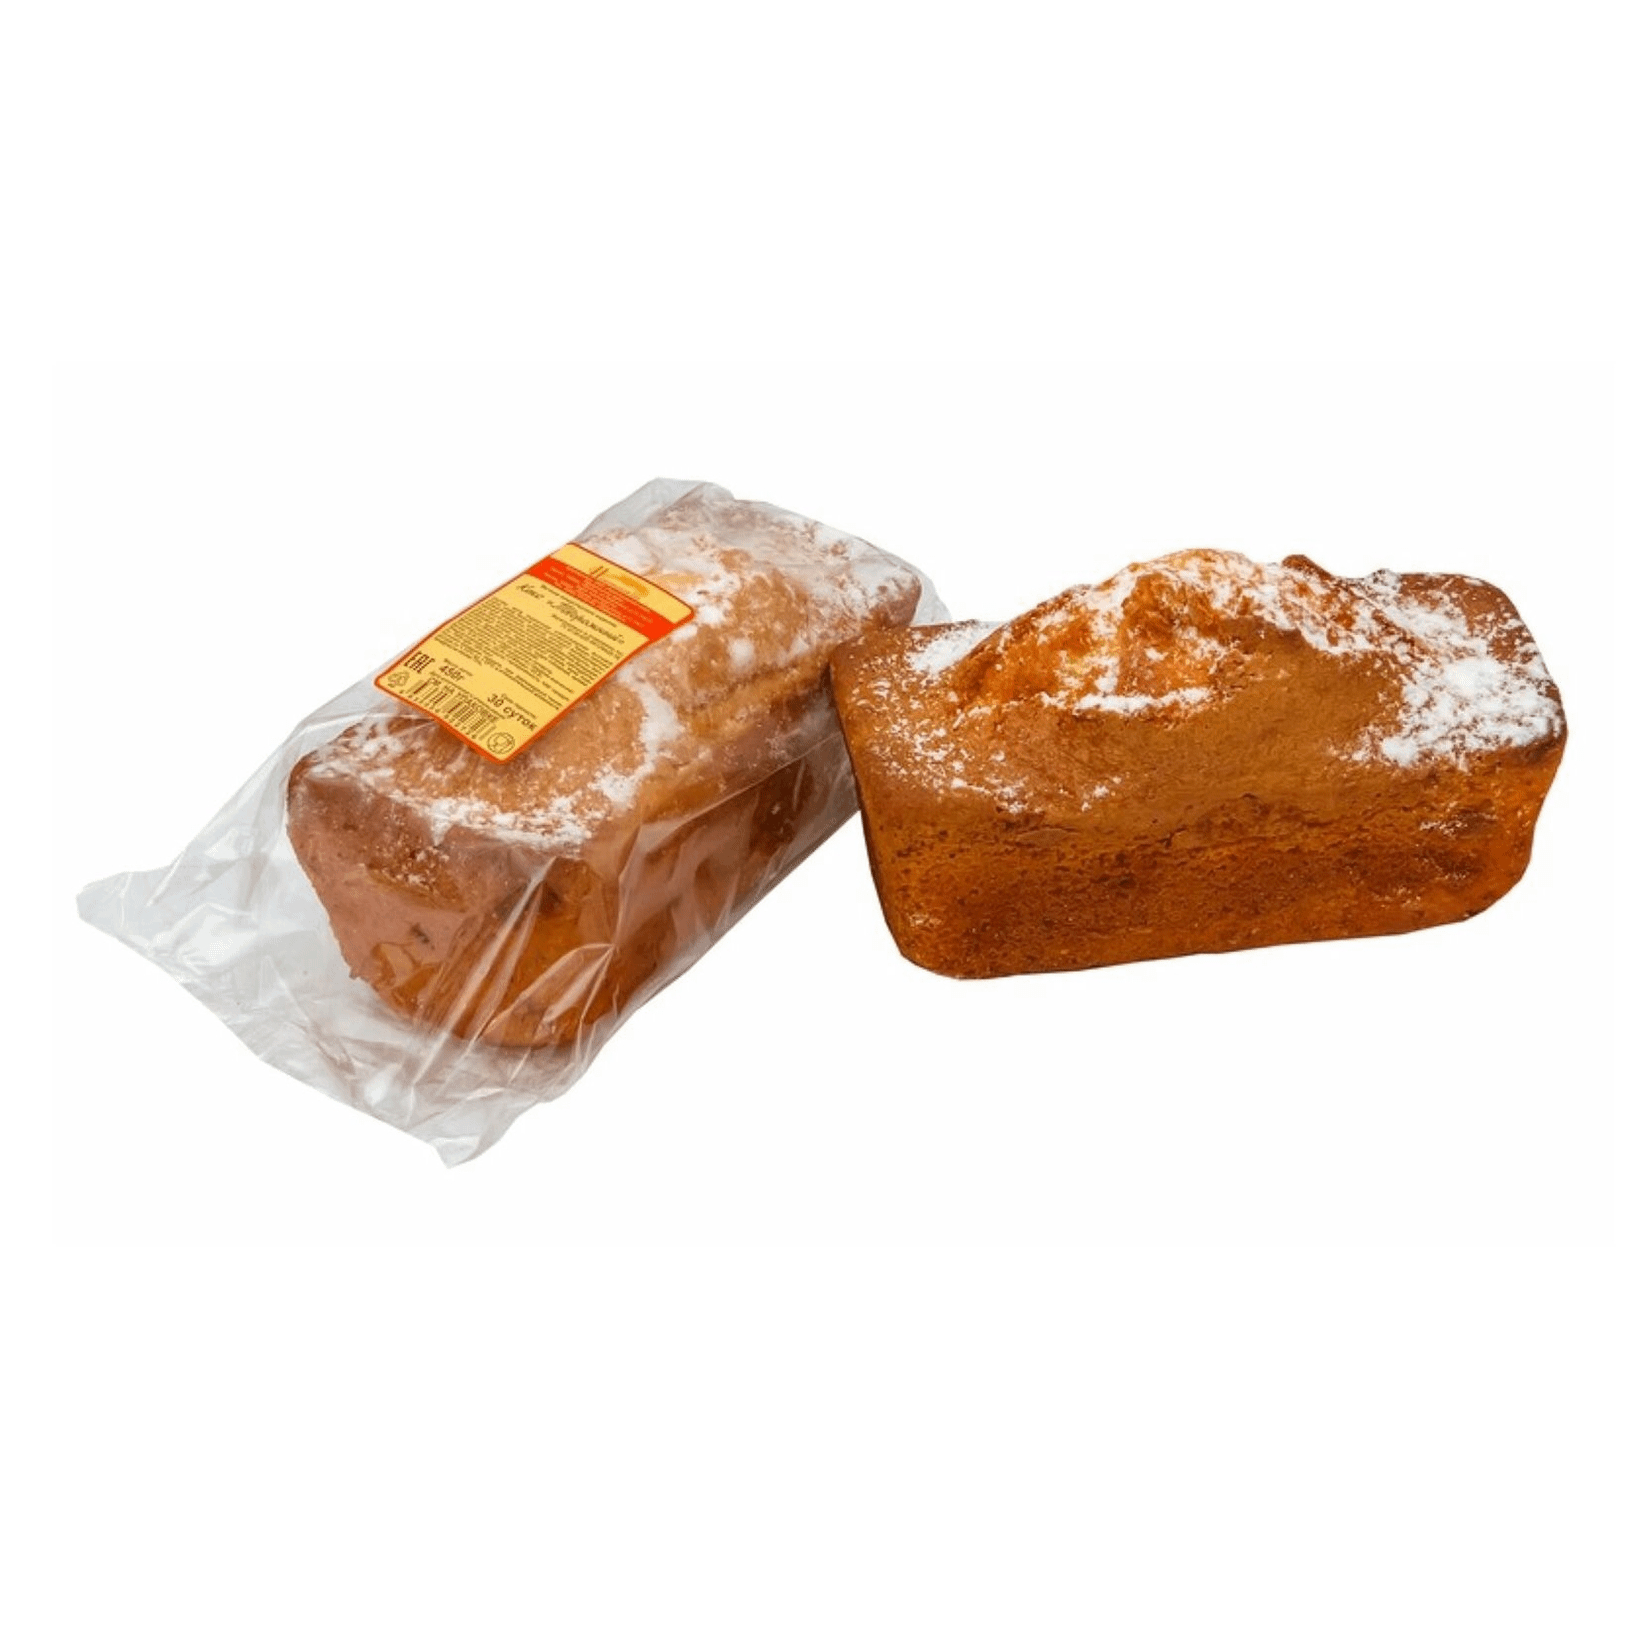 Кекс Нижегородский хлеб Творожный, 450 г кекс творожный щёлковохлеб 330 г